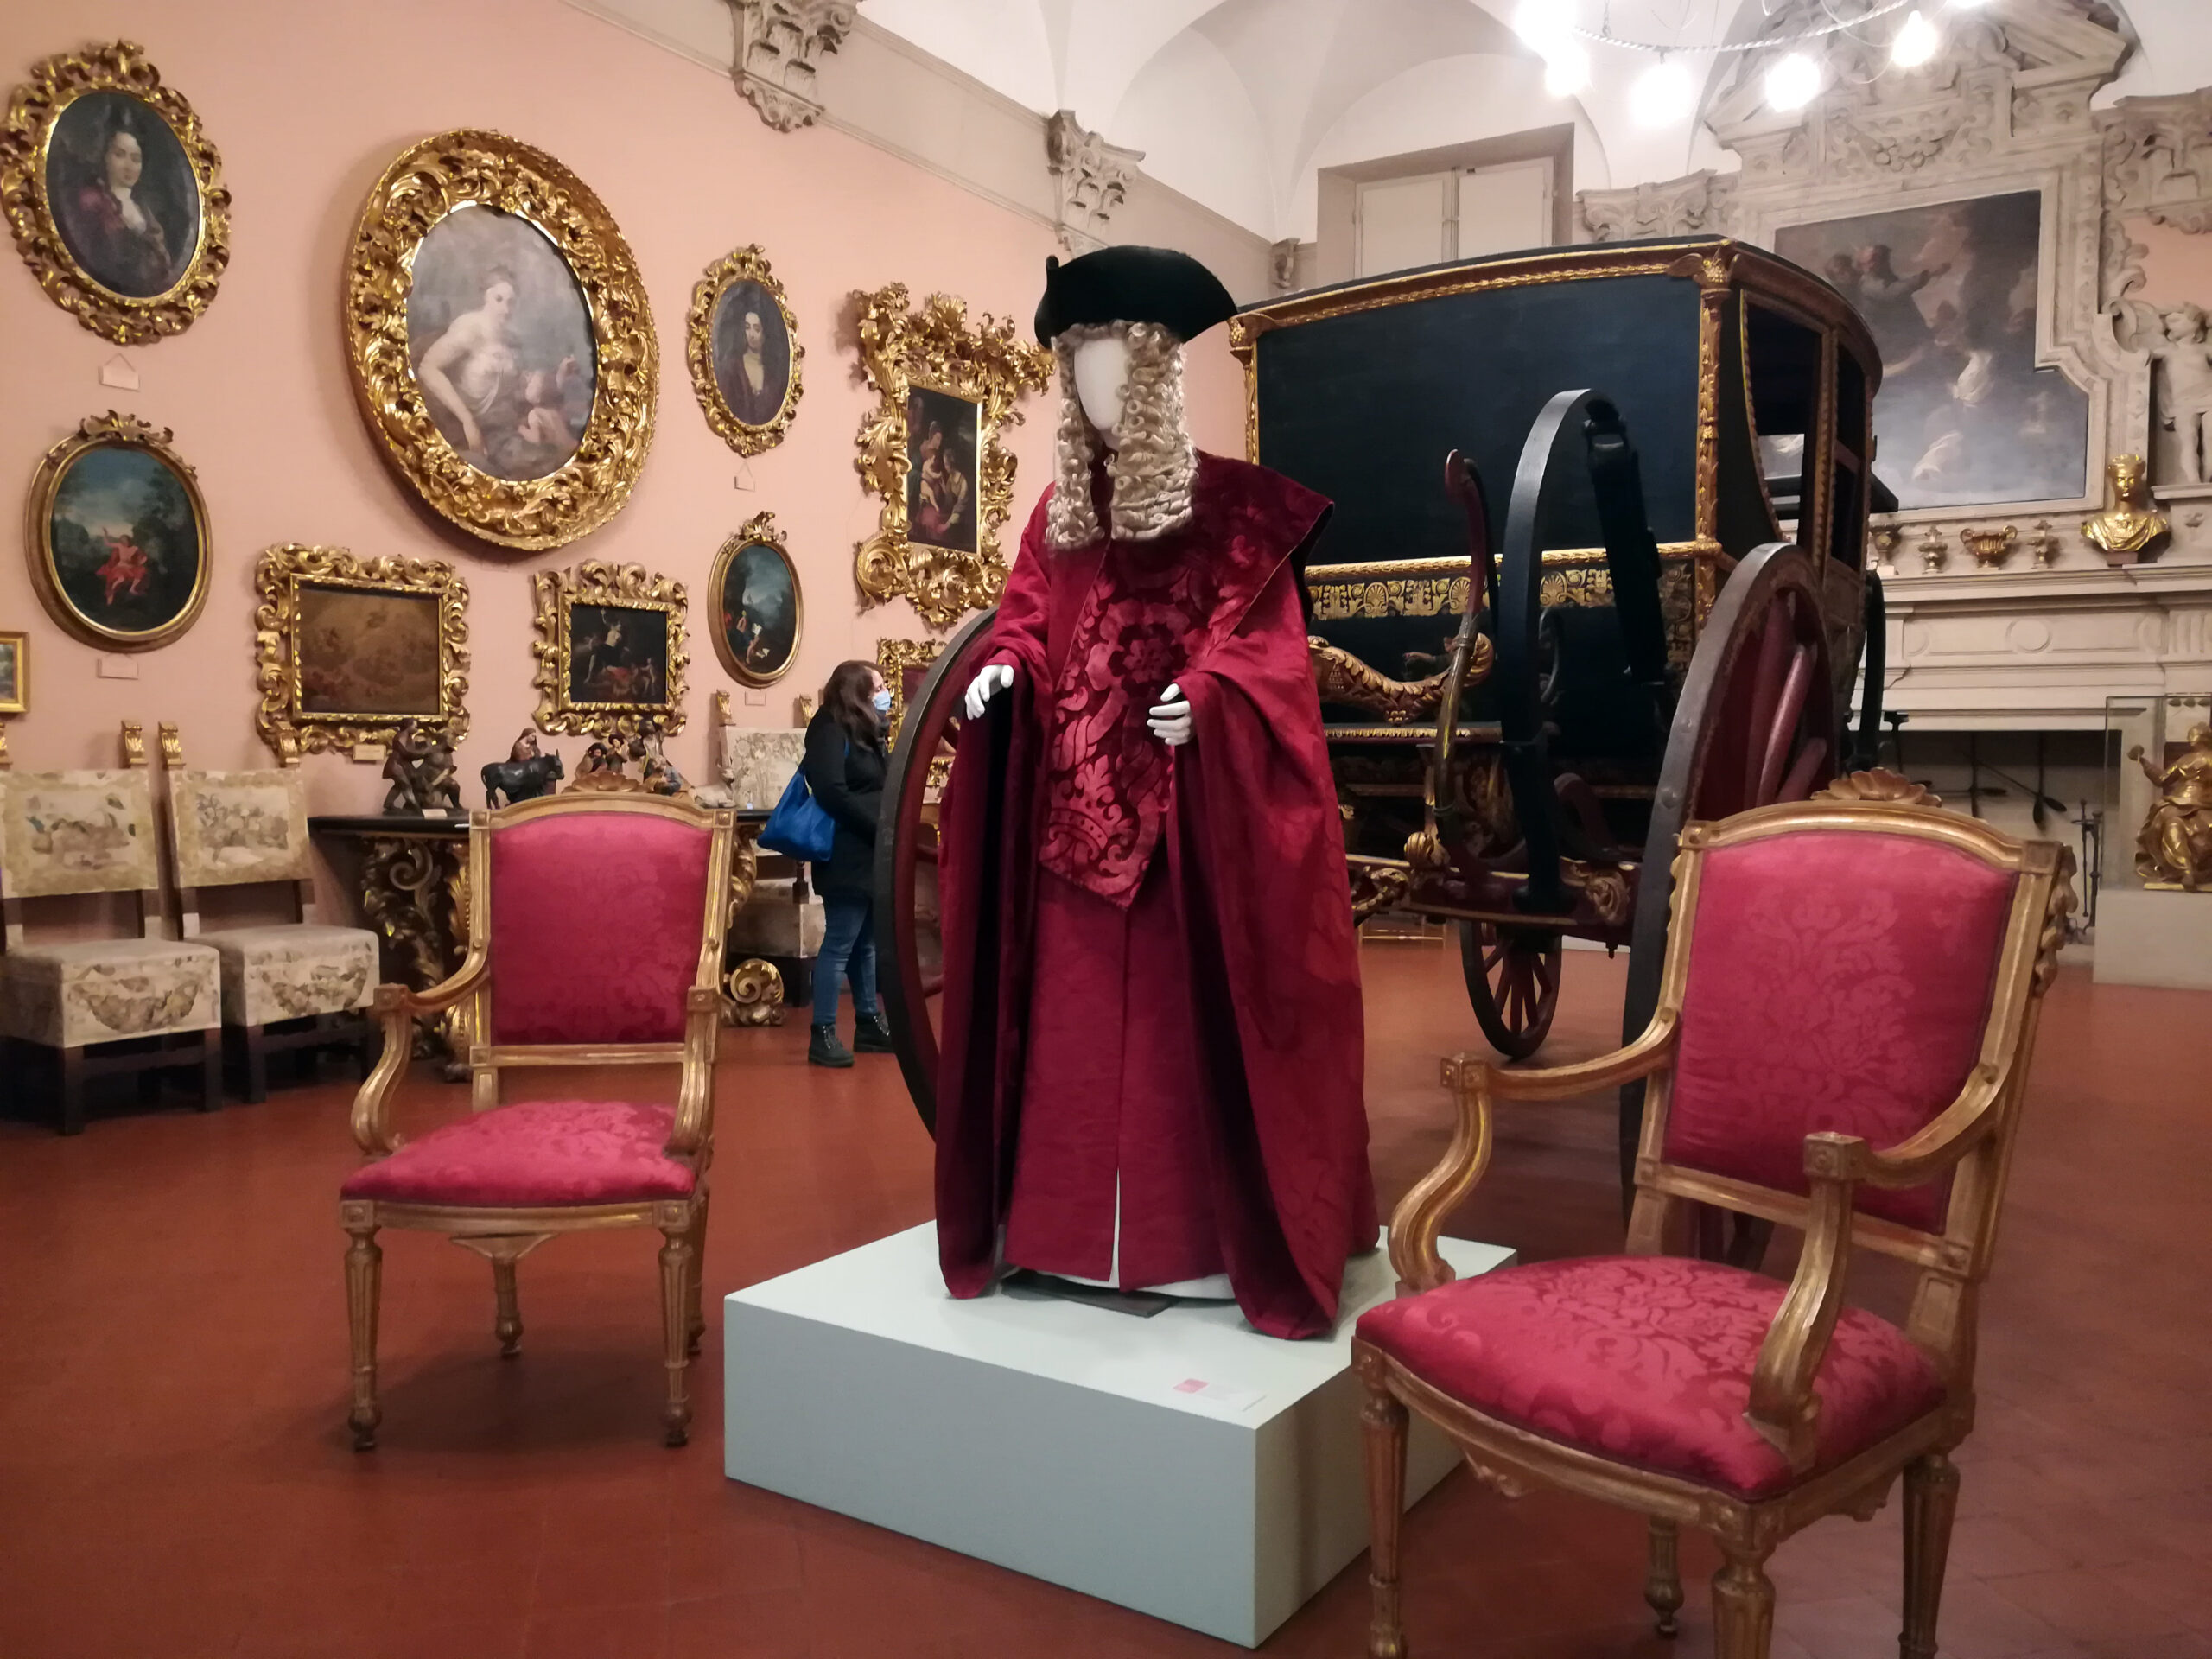 Il piacere di vivere. Arte e moda del fastoso Settecento veneziano rivivono a Bologna